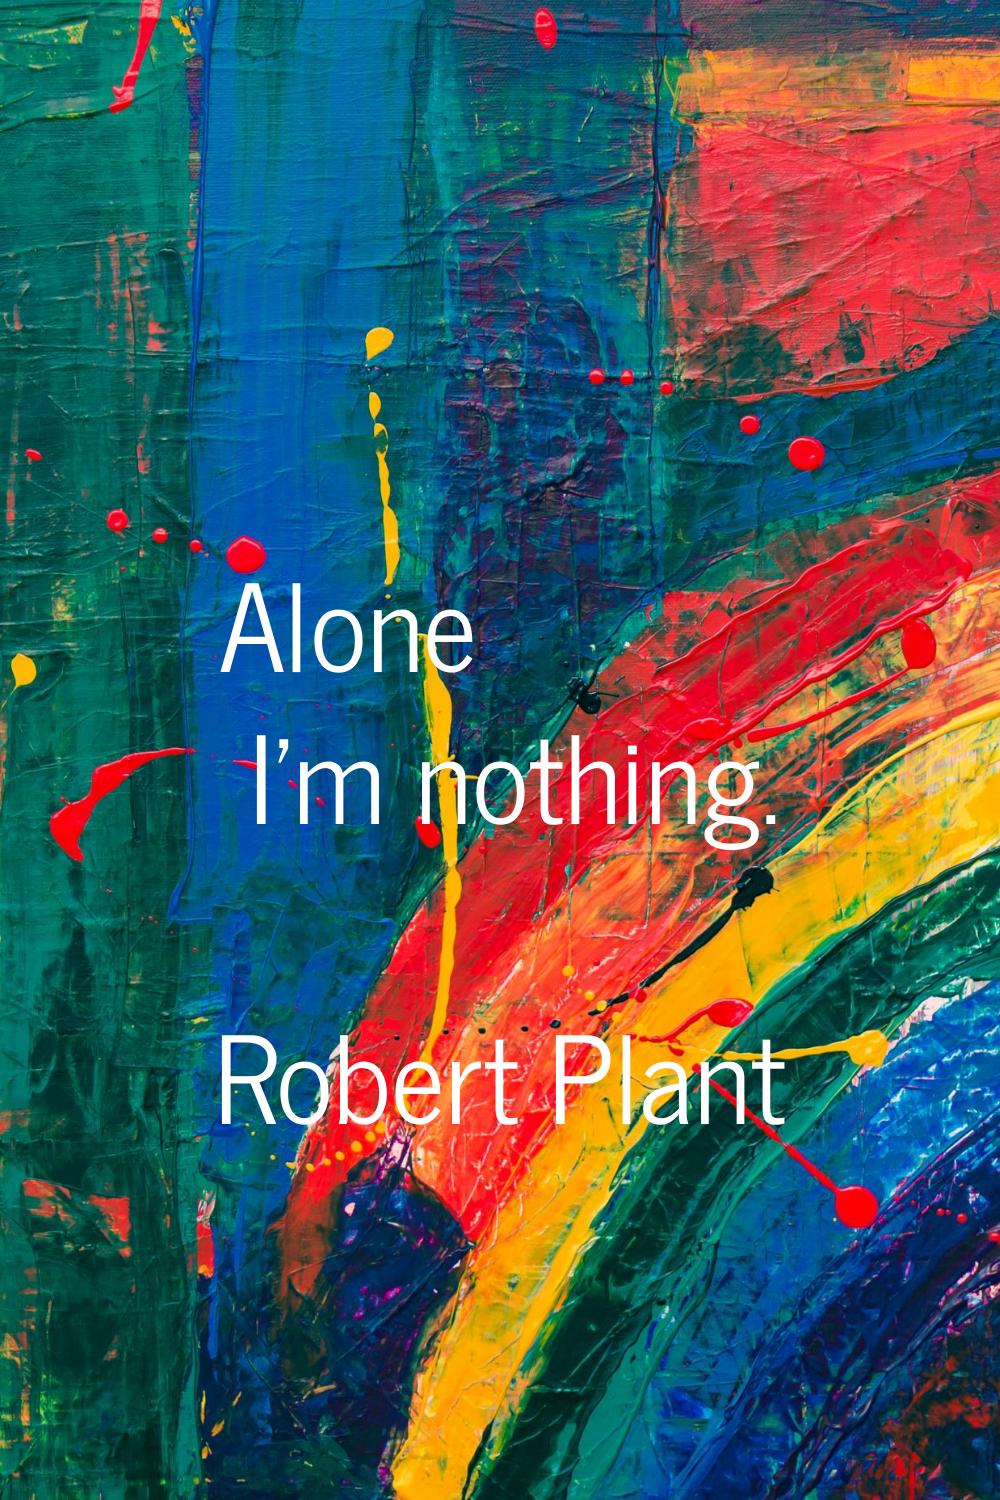 Alone I'm nothing.